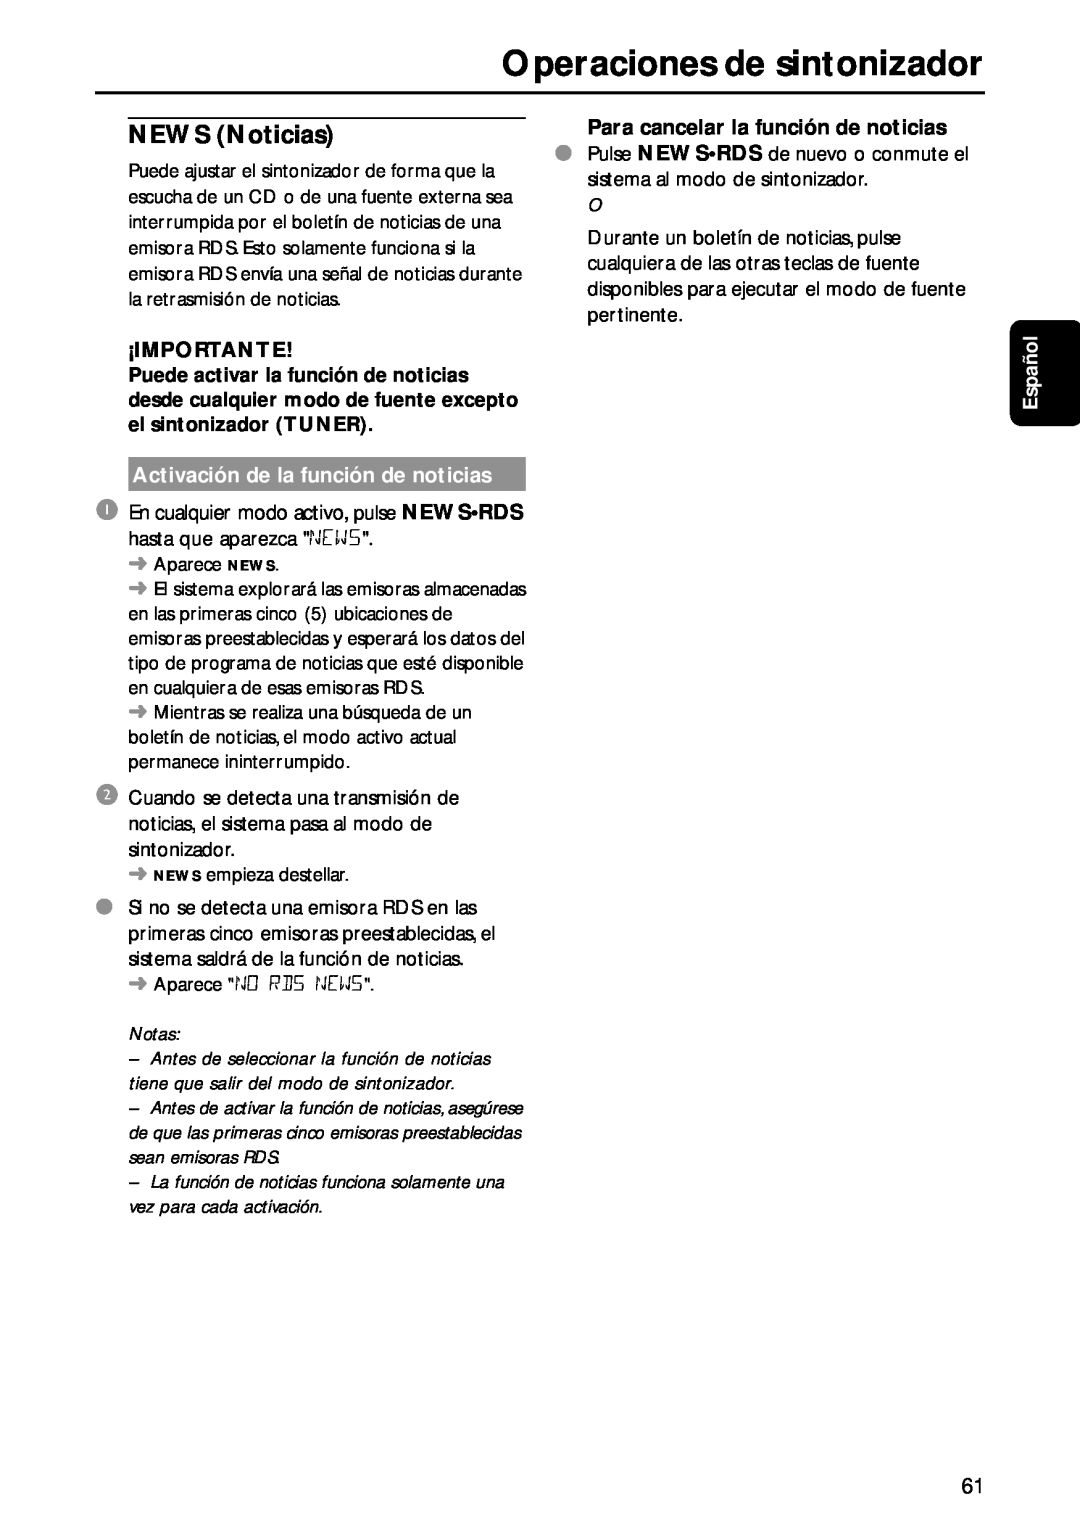 Philips MC-M570 manual Operaciones de sintonizador, ¡Importante, Activación de la función de noticias, Notas, Español 